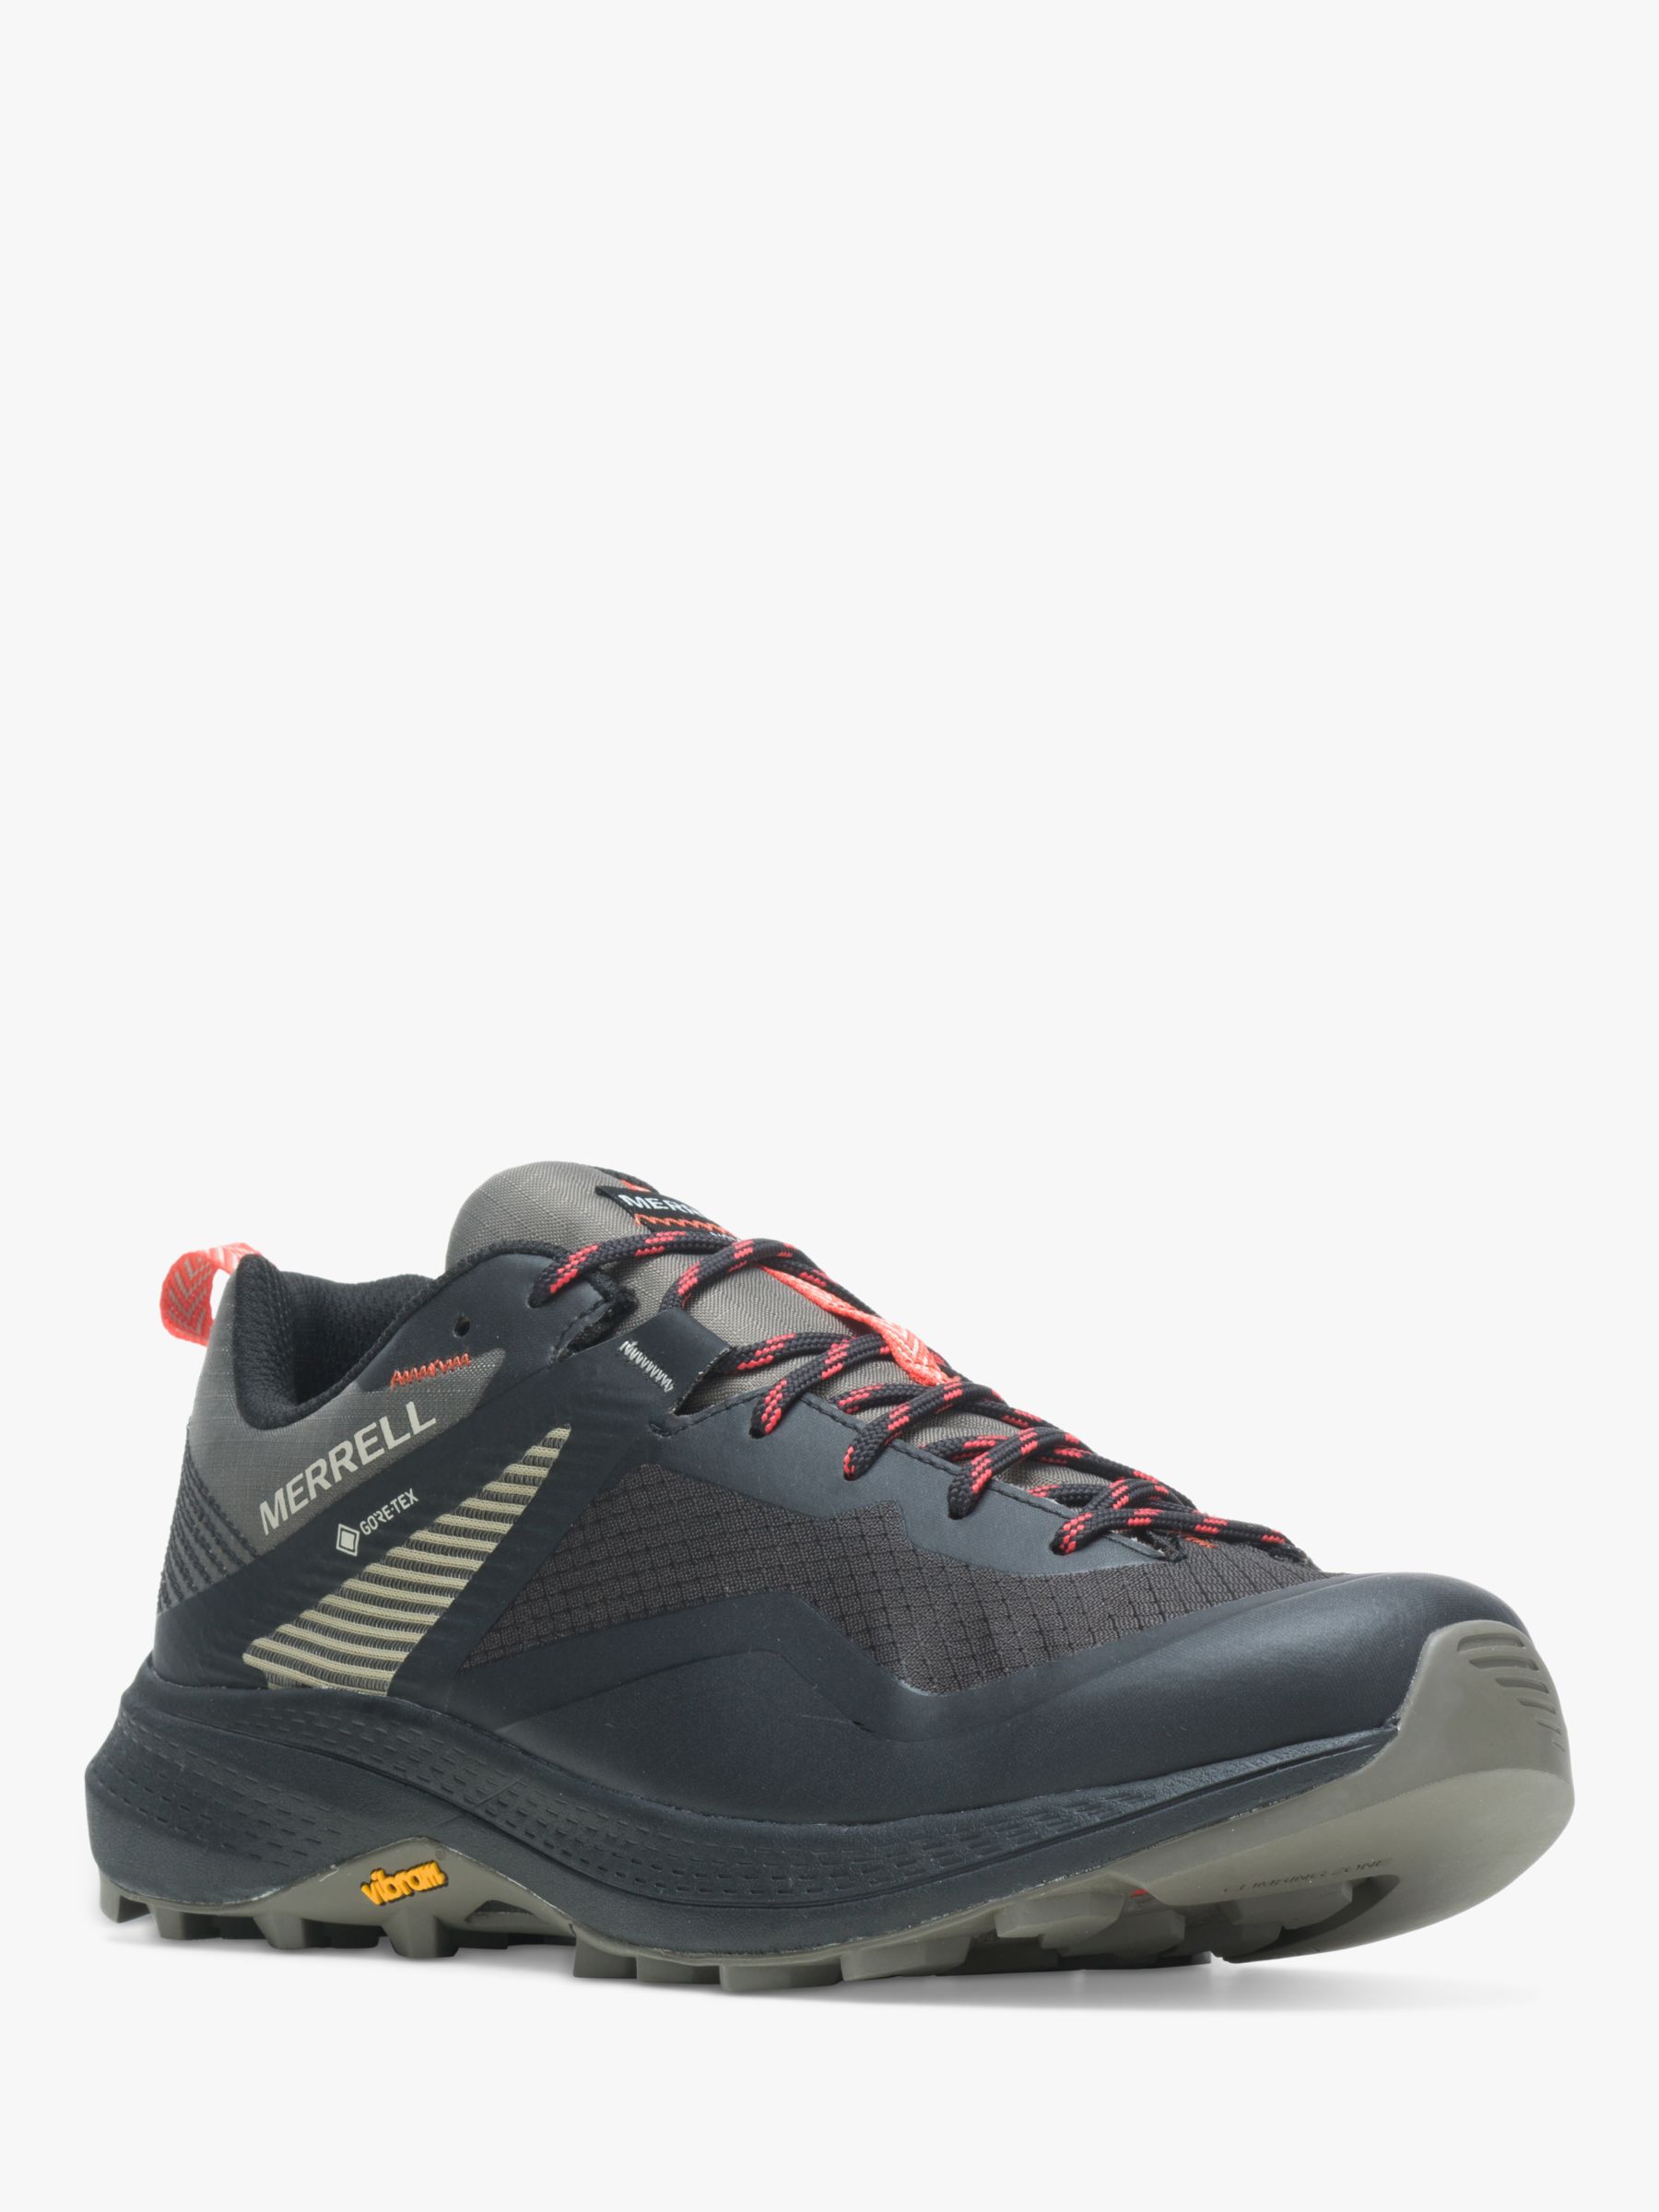 Buy Merrell MQM 3 Men's Waterproof Gore-Tex Walking Shoes Online at johnlewis.com